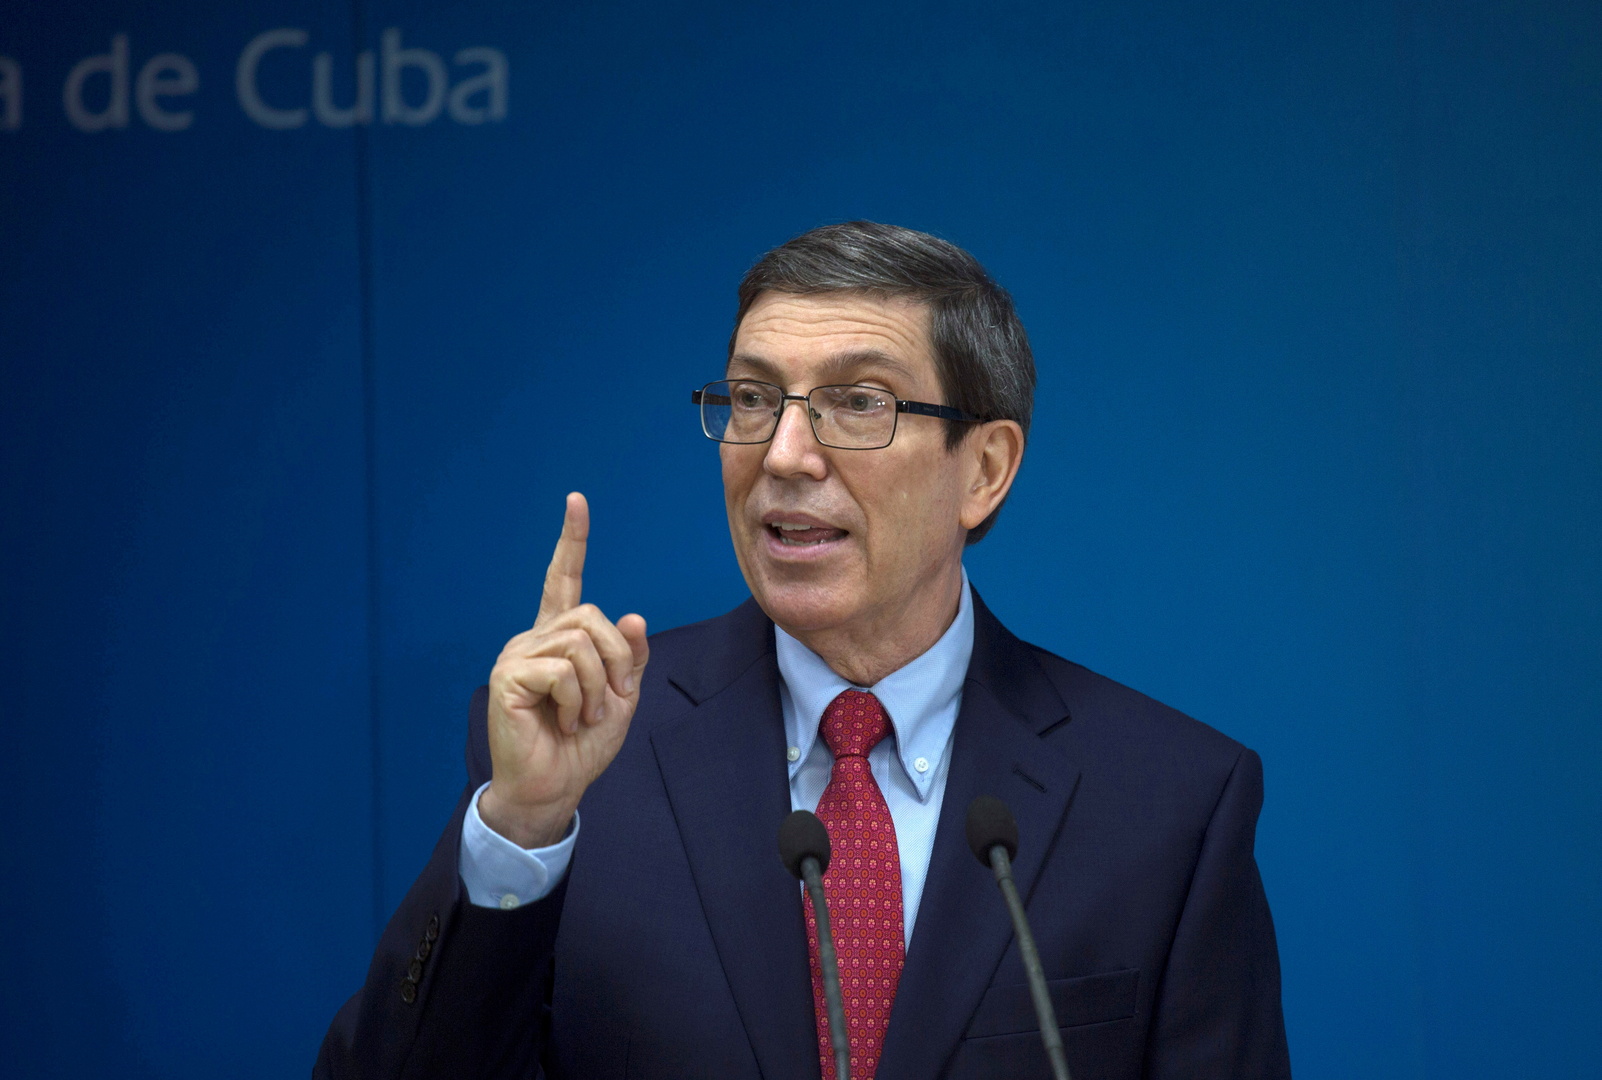 كوبا: الدعوات للتدخل الإنساني تفتح الباب للتدخل العسكري الأمريكي